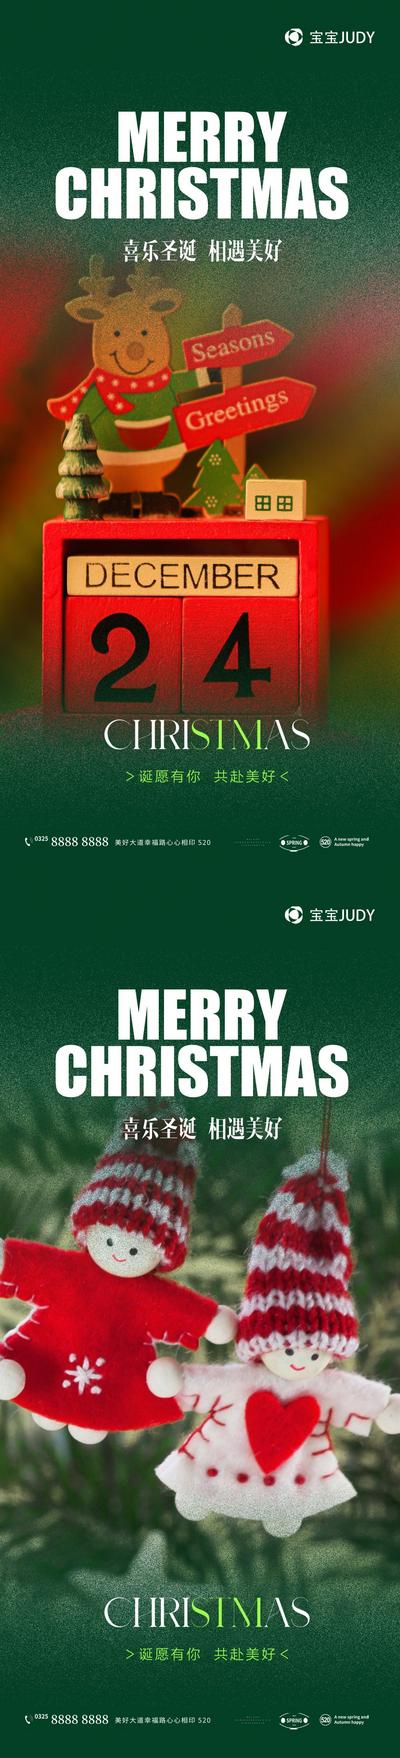 【南门网】广告 海报 节日 圣诞节 元素 圣诞 系列 品质